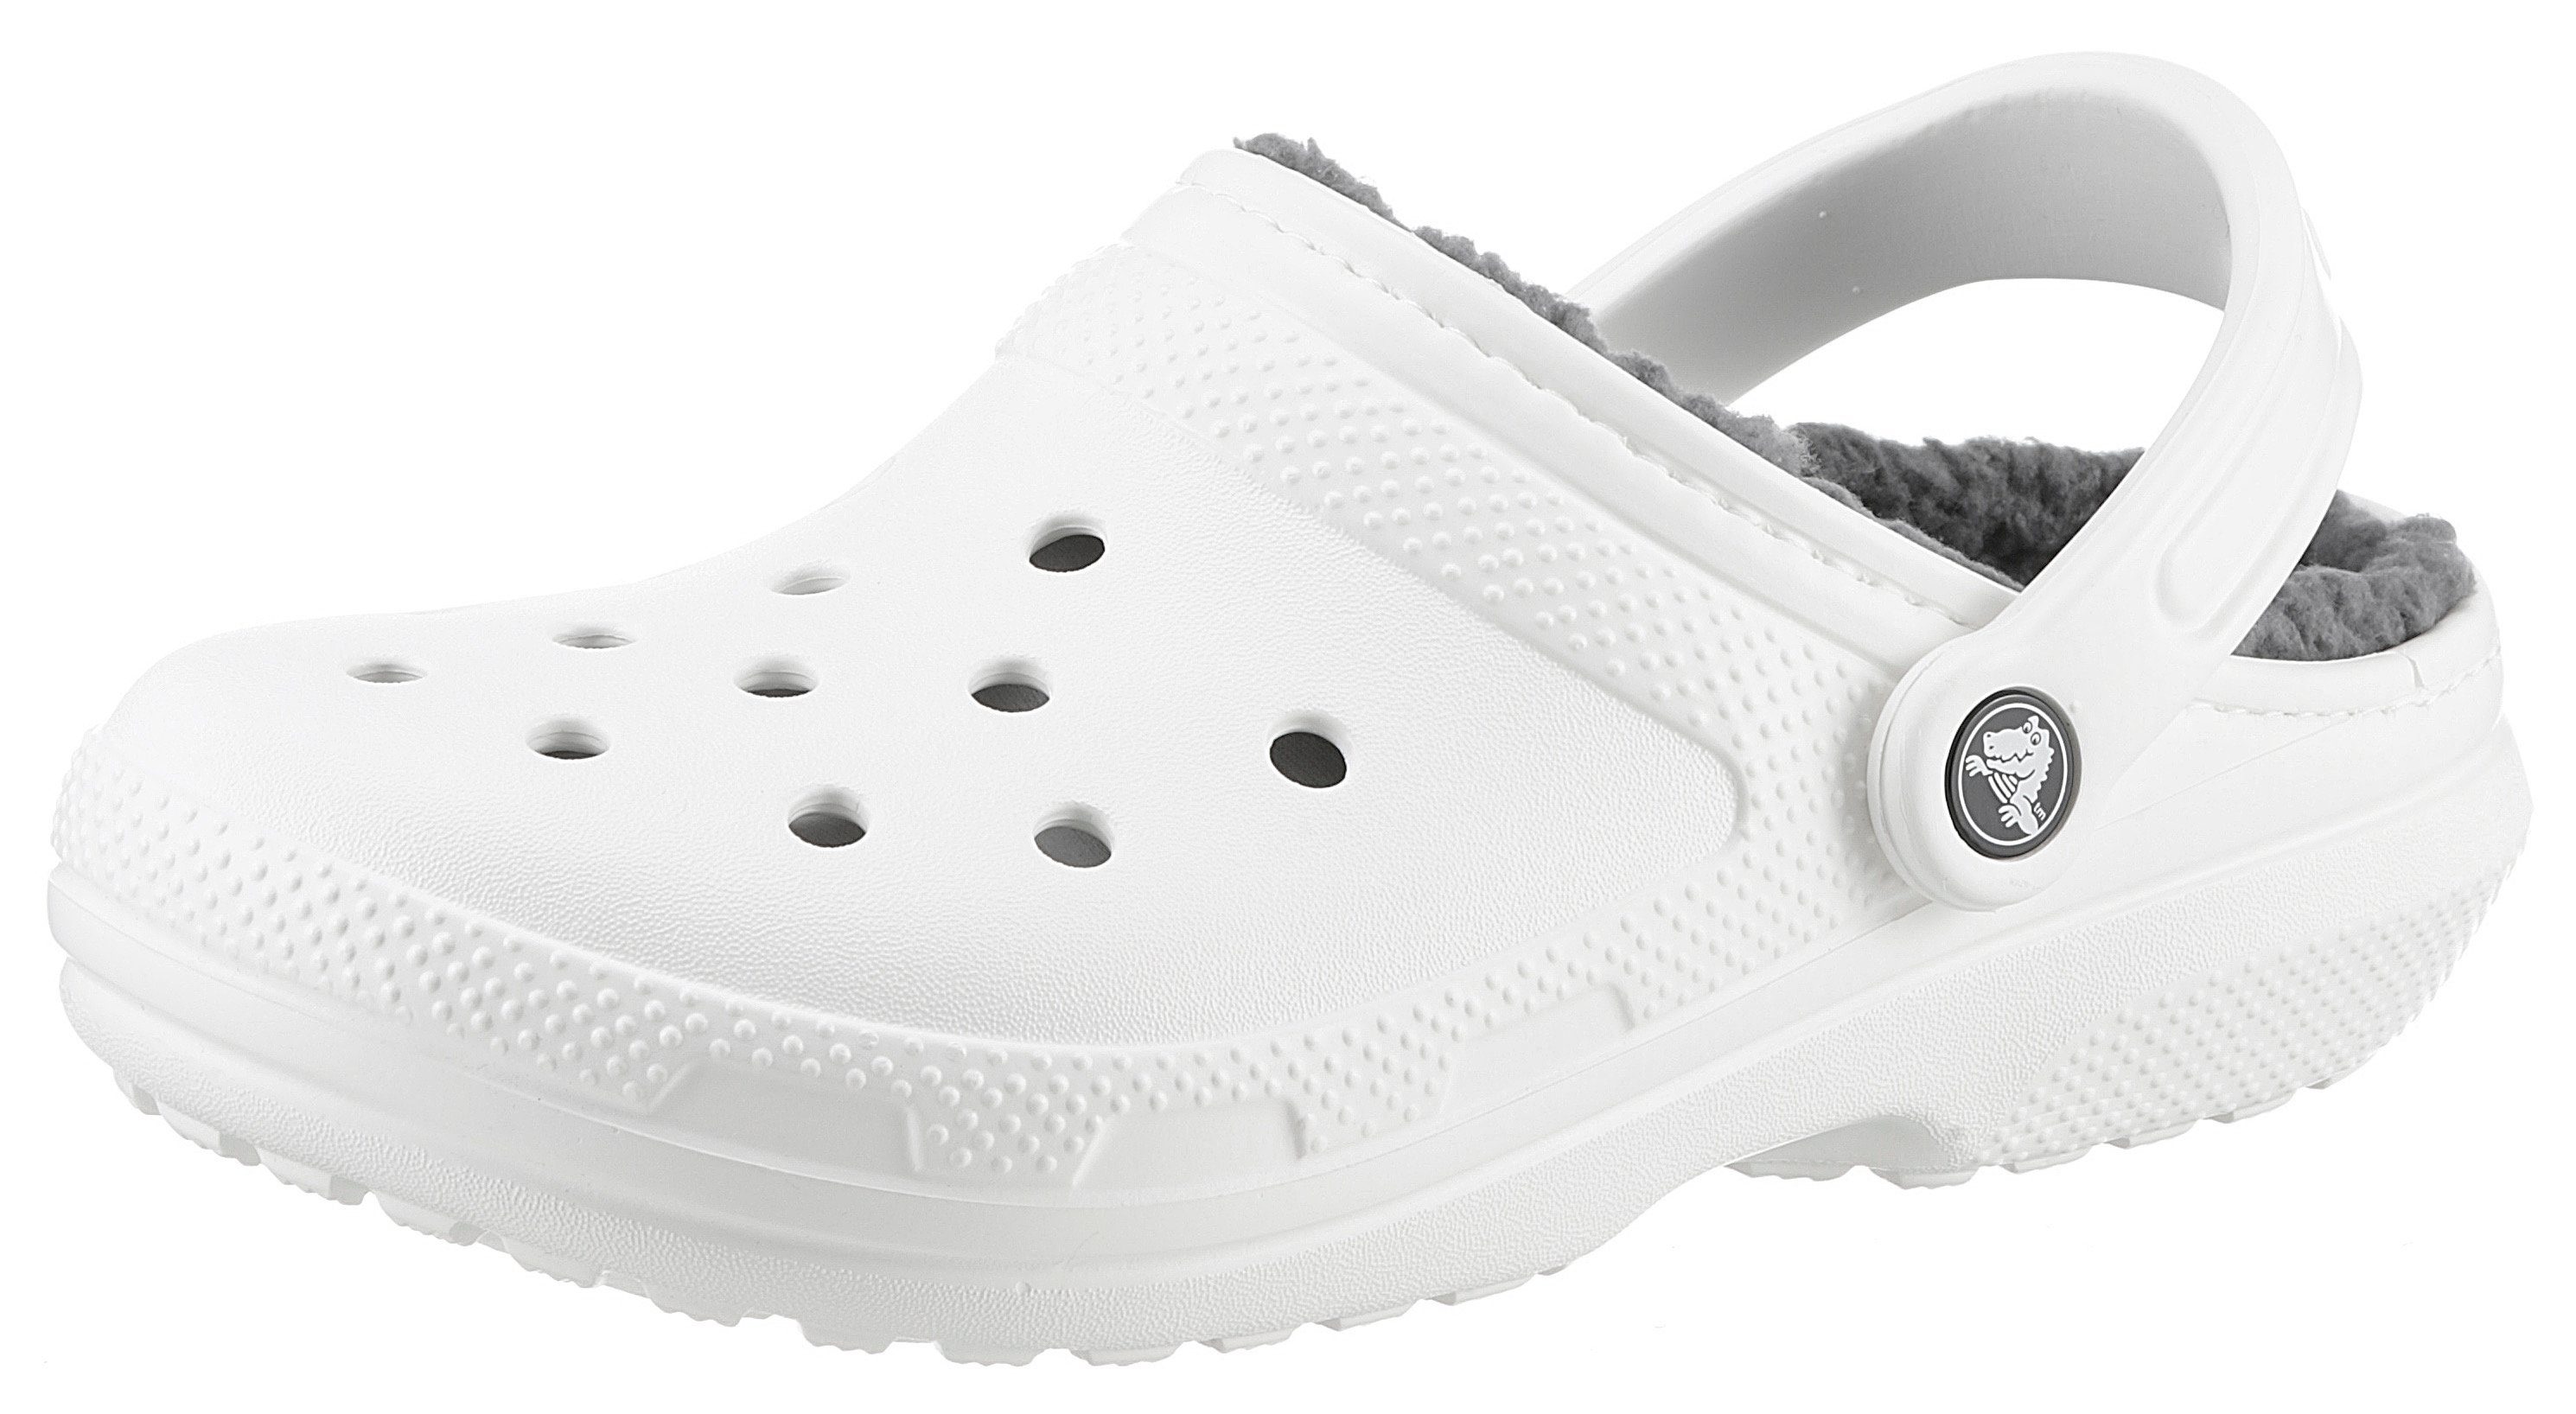 Crocs Classic Lined Clog mit Fellimitat Hausschuh kuscheligem weiß-grau